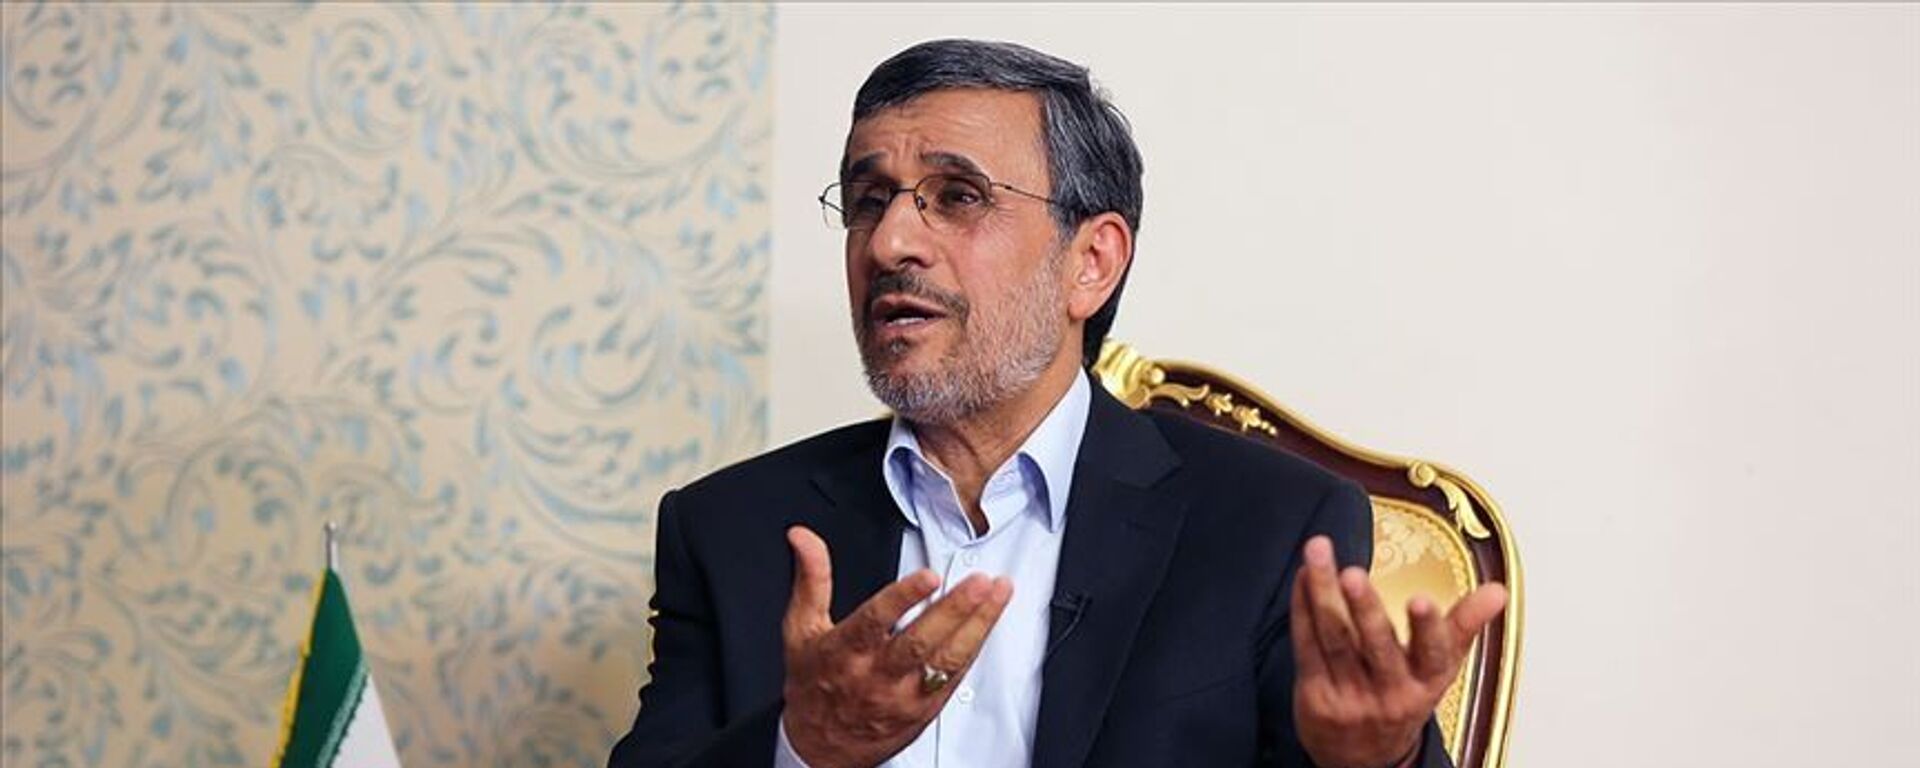 Eski İran Cumhurbaşkanı Ahmedinejad: Toplumdaki memnuniyetsizlik hiç olmadığı kadar fazla. - Sputnik Türkiye, 1920, 08.02.2021